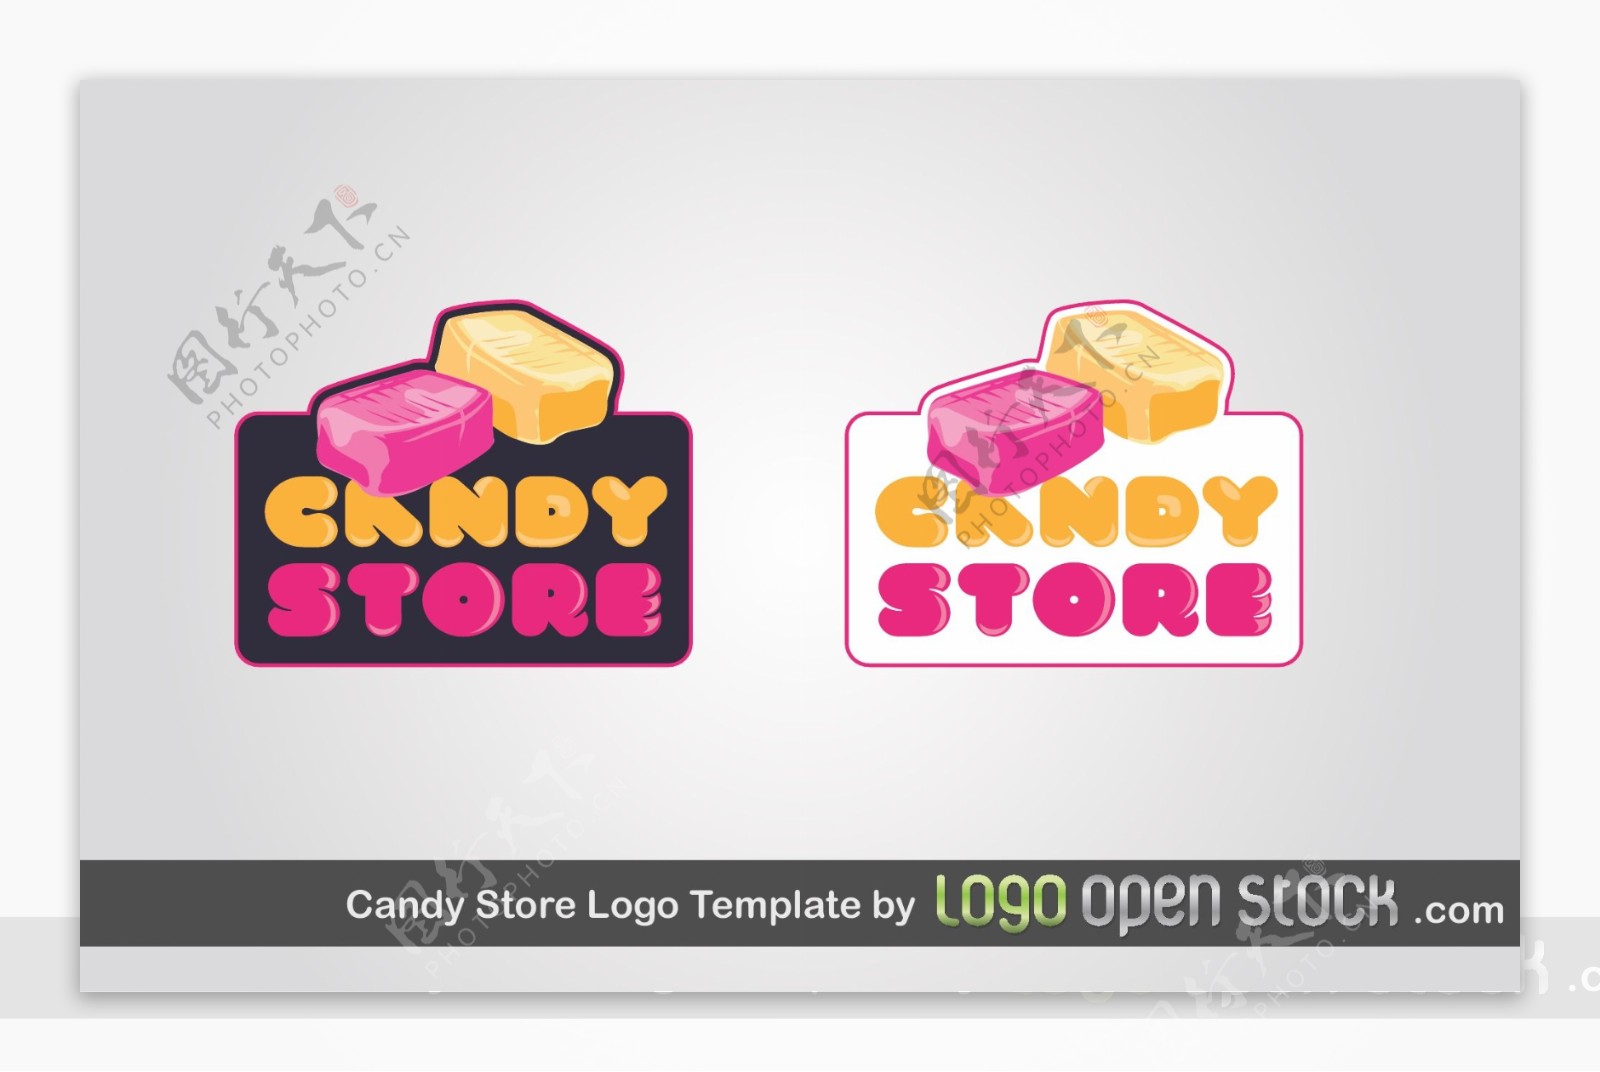 糖果店的logo模板